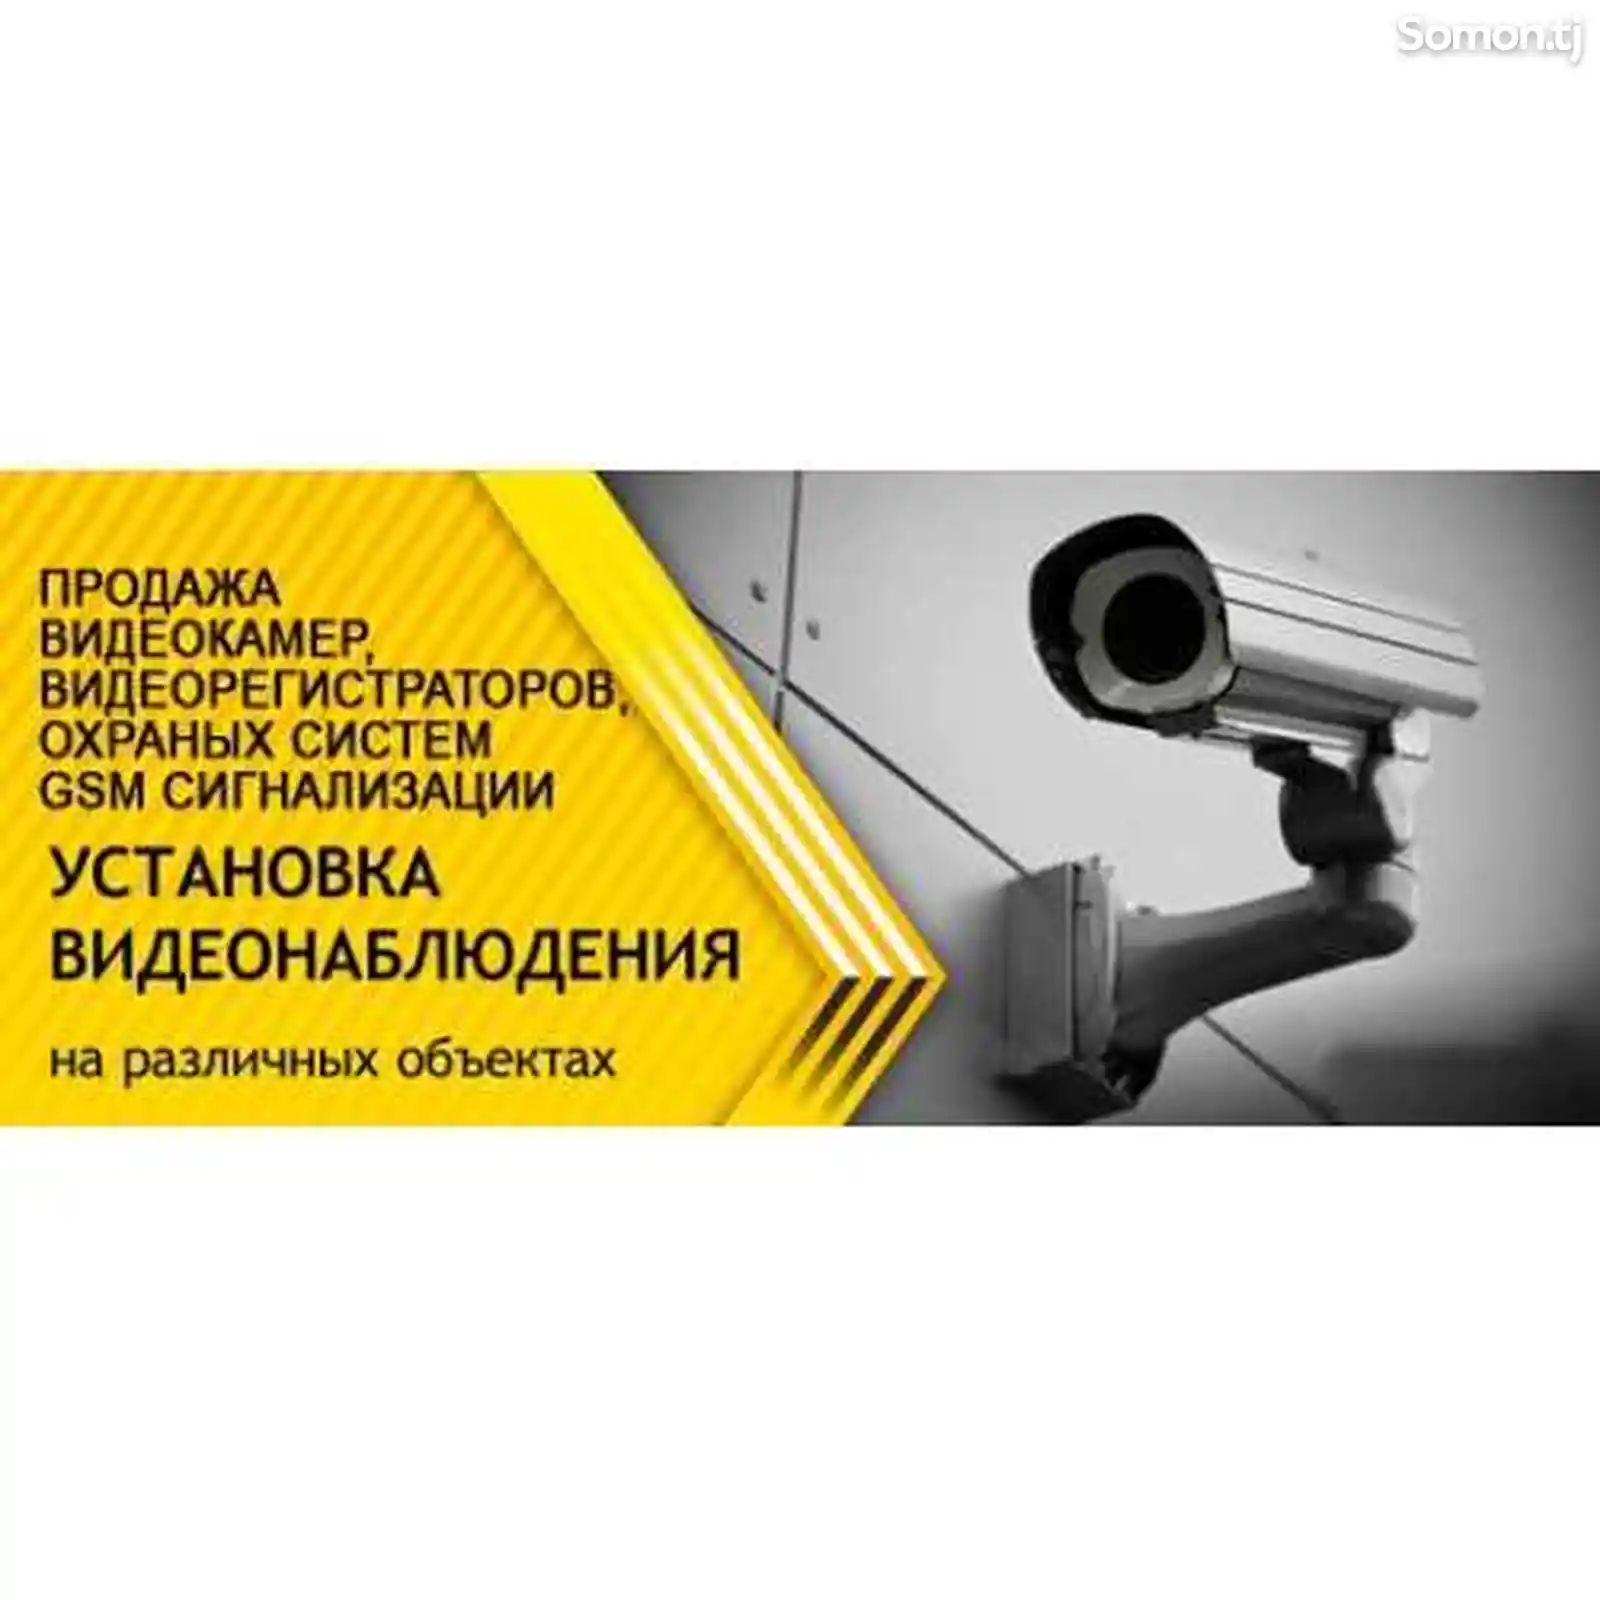 Установка видеонаблюдения аналоги и IP камера-1